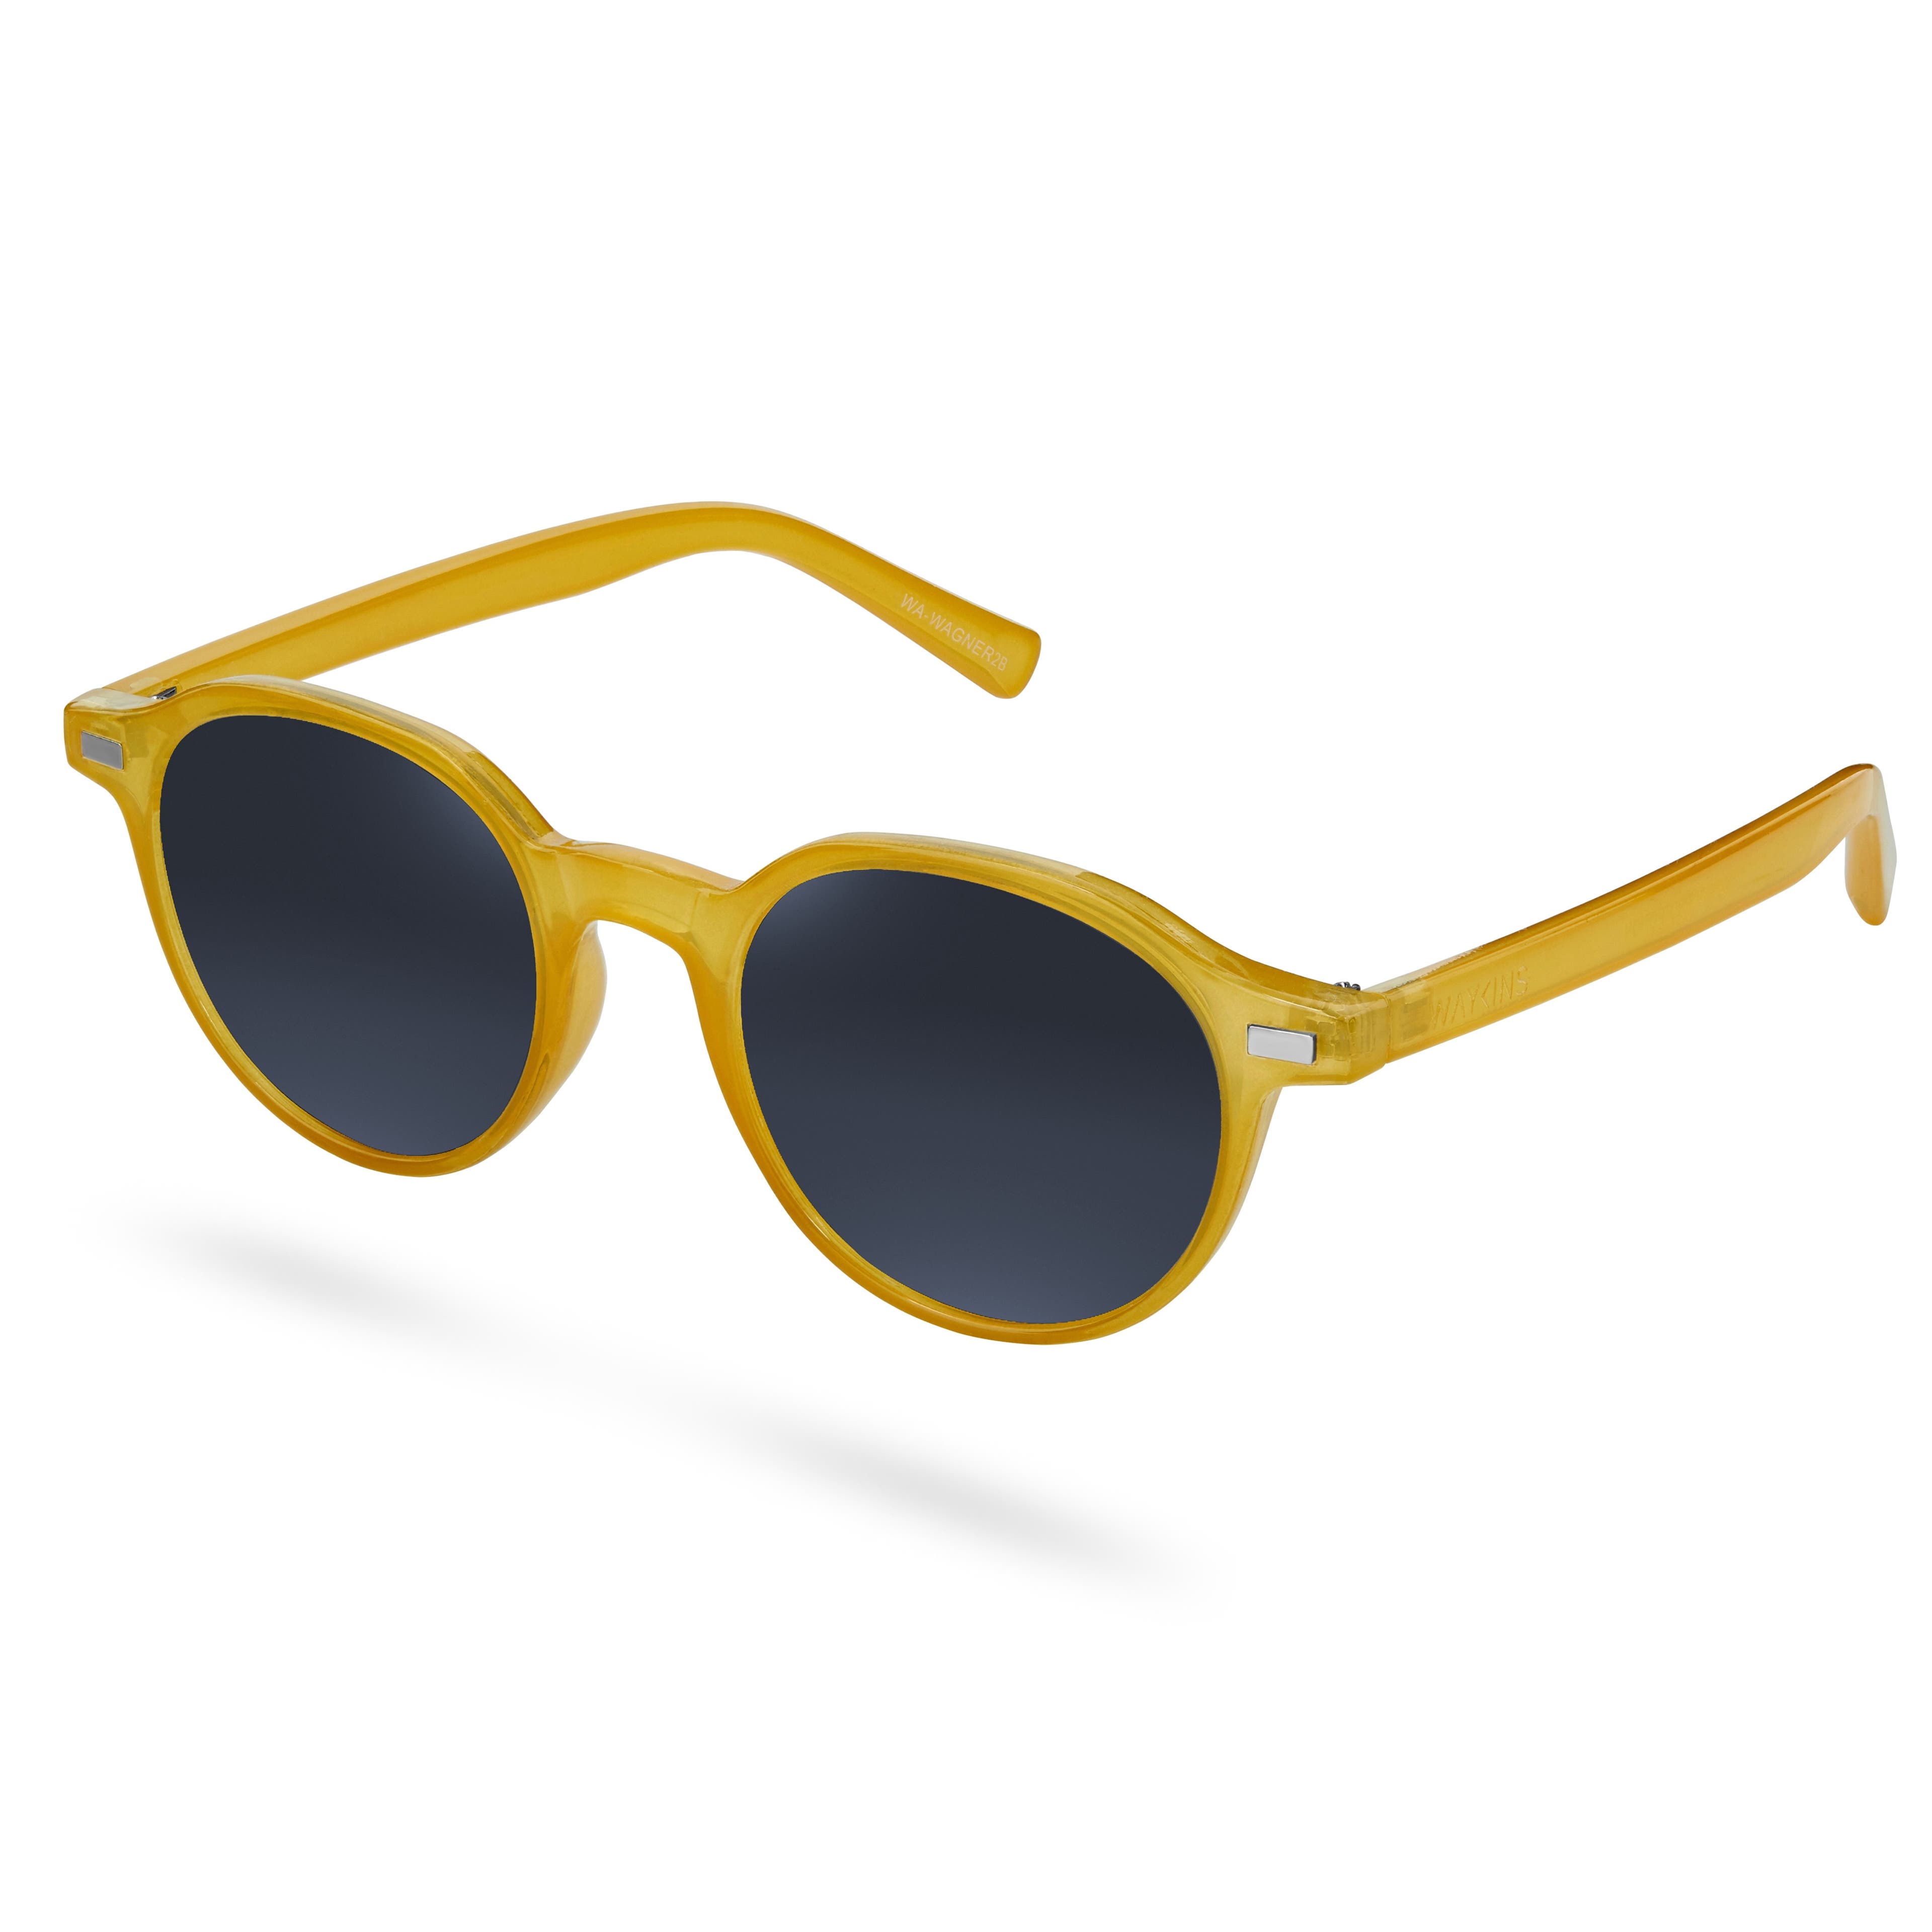 Слънчеви очила Wagner с жълти рамки и сиви стъкла